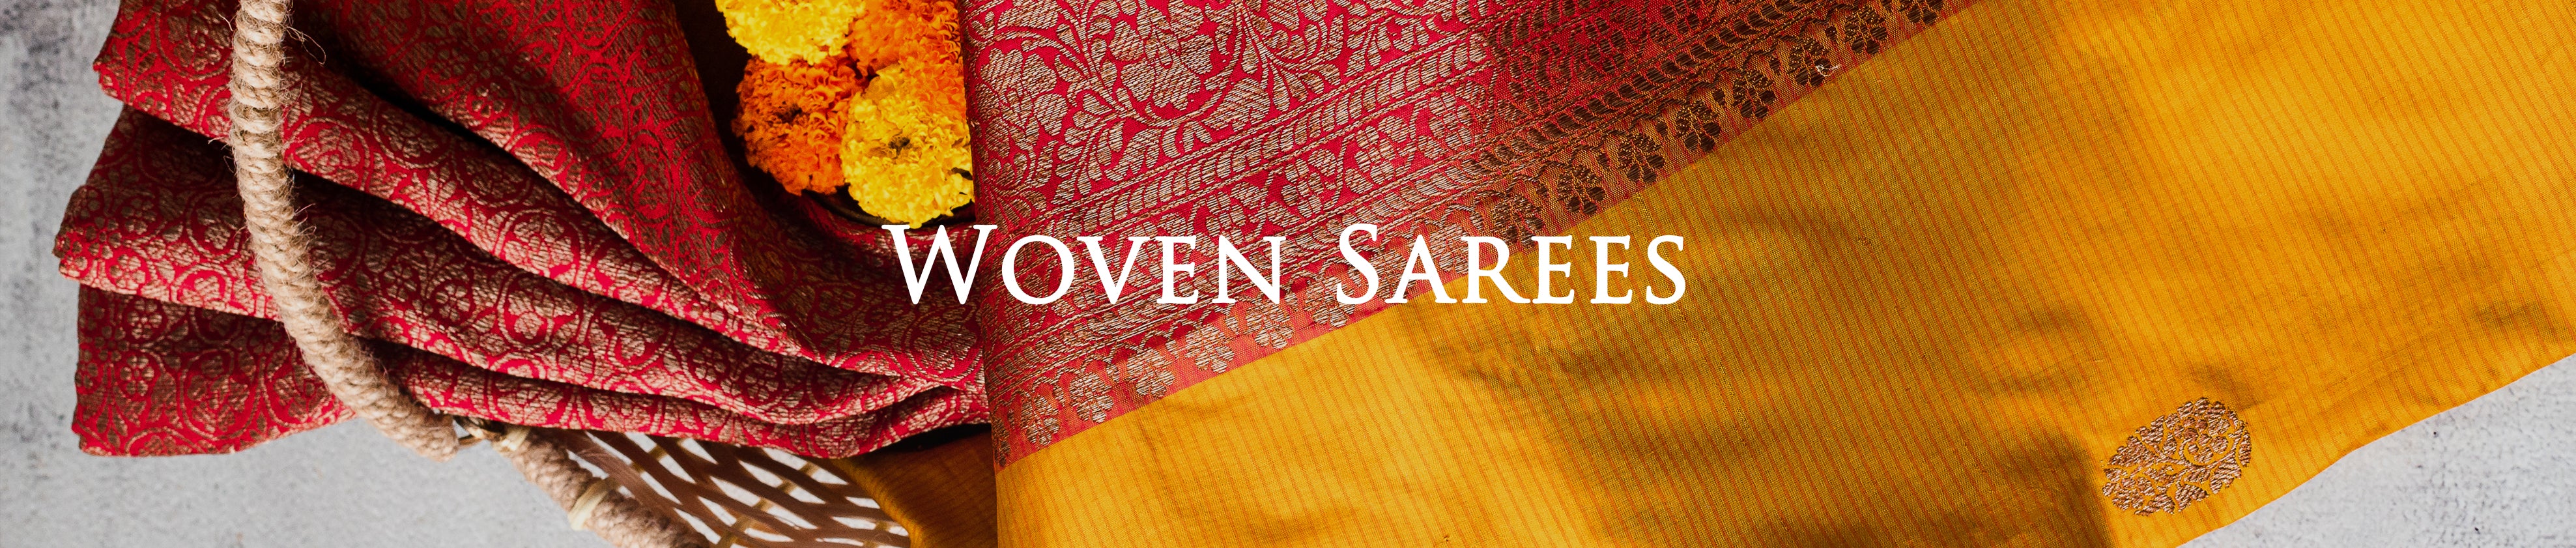 woven sarees